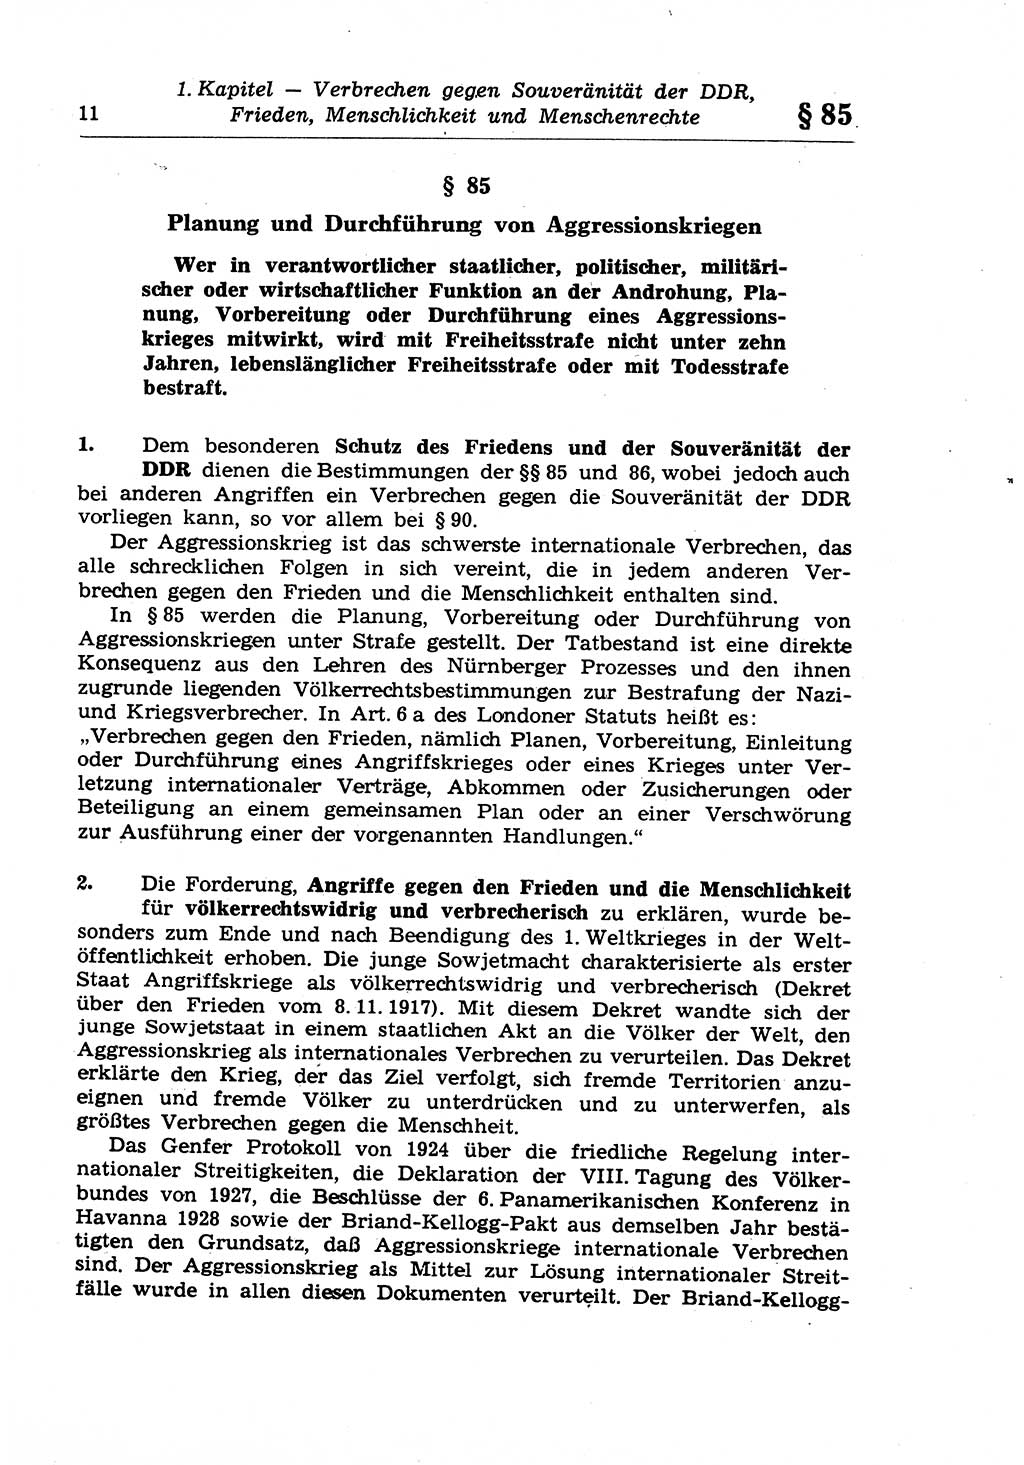 Strafrecht der Deutschen Demokratischen Republik (DDR), Lehrkommentar zum Strafgesetzbuch (StGB), Besonderer Teil 1970, Seite 11 (Strafr. DDR Lehrkomm. StGB BT 1970, S. 11)